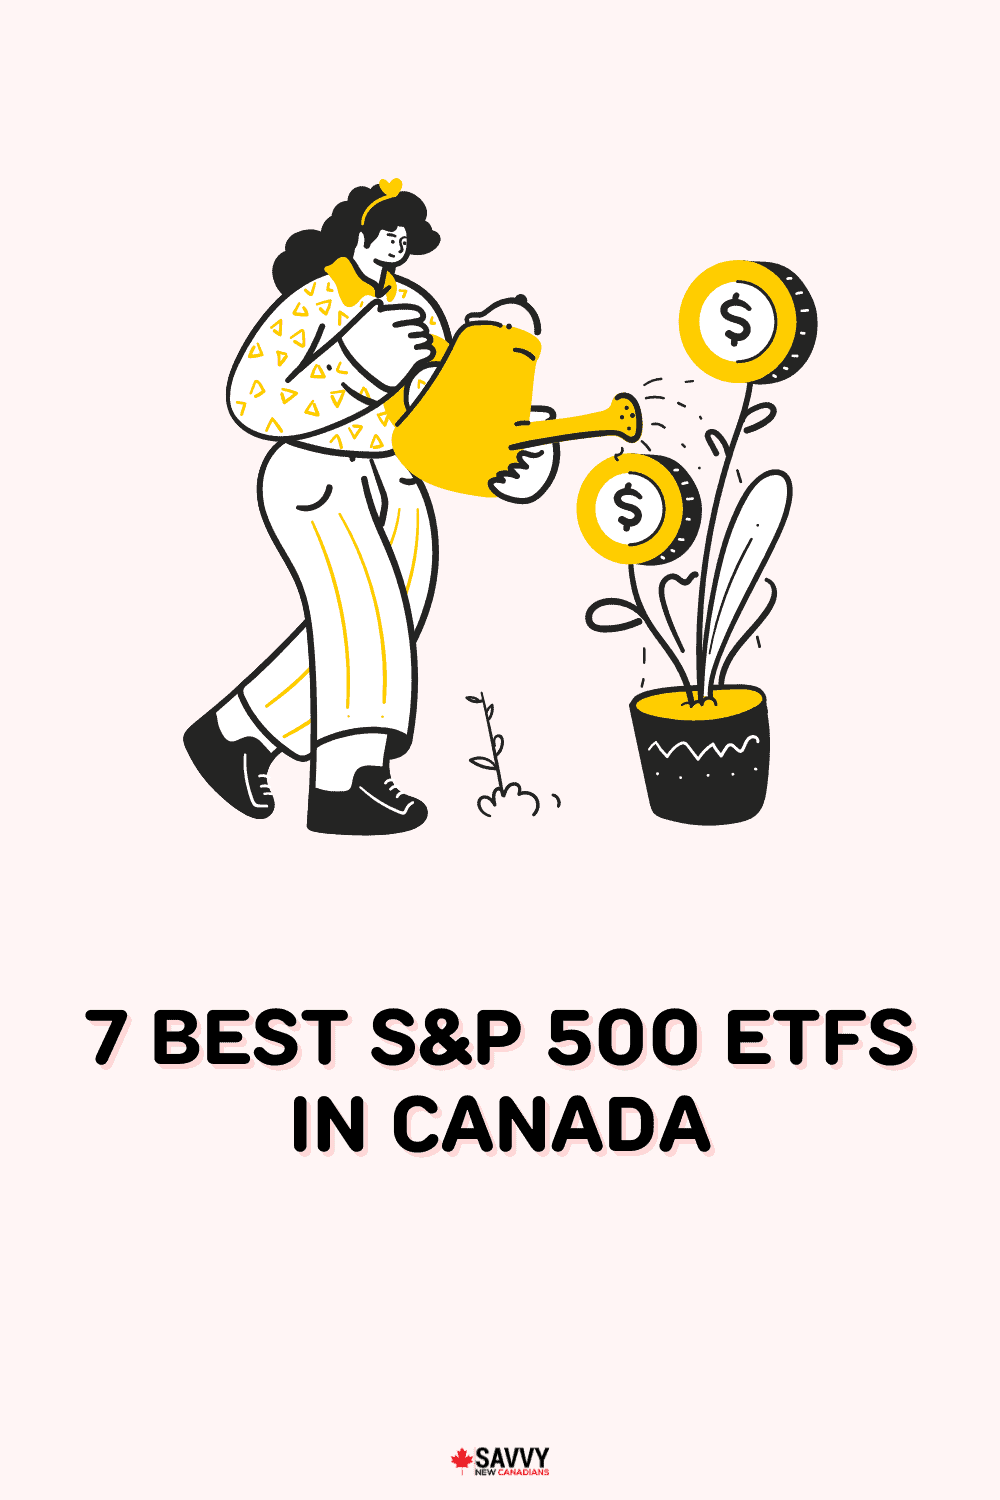 7 Best S&P 500 ETFs in Canada for 2022